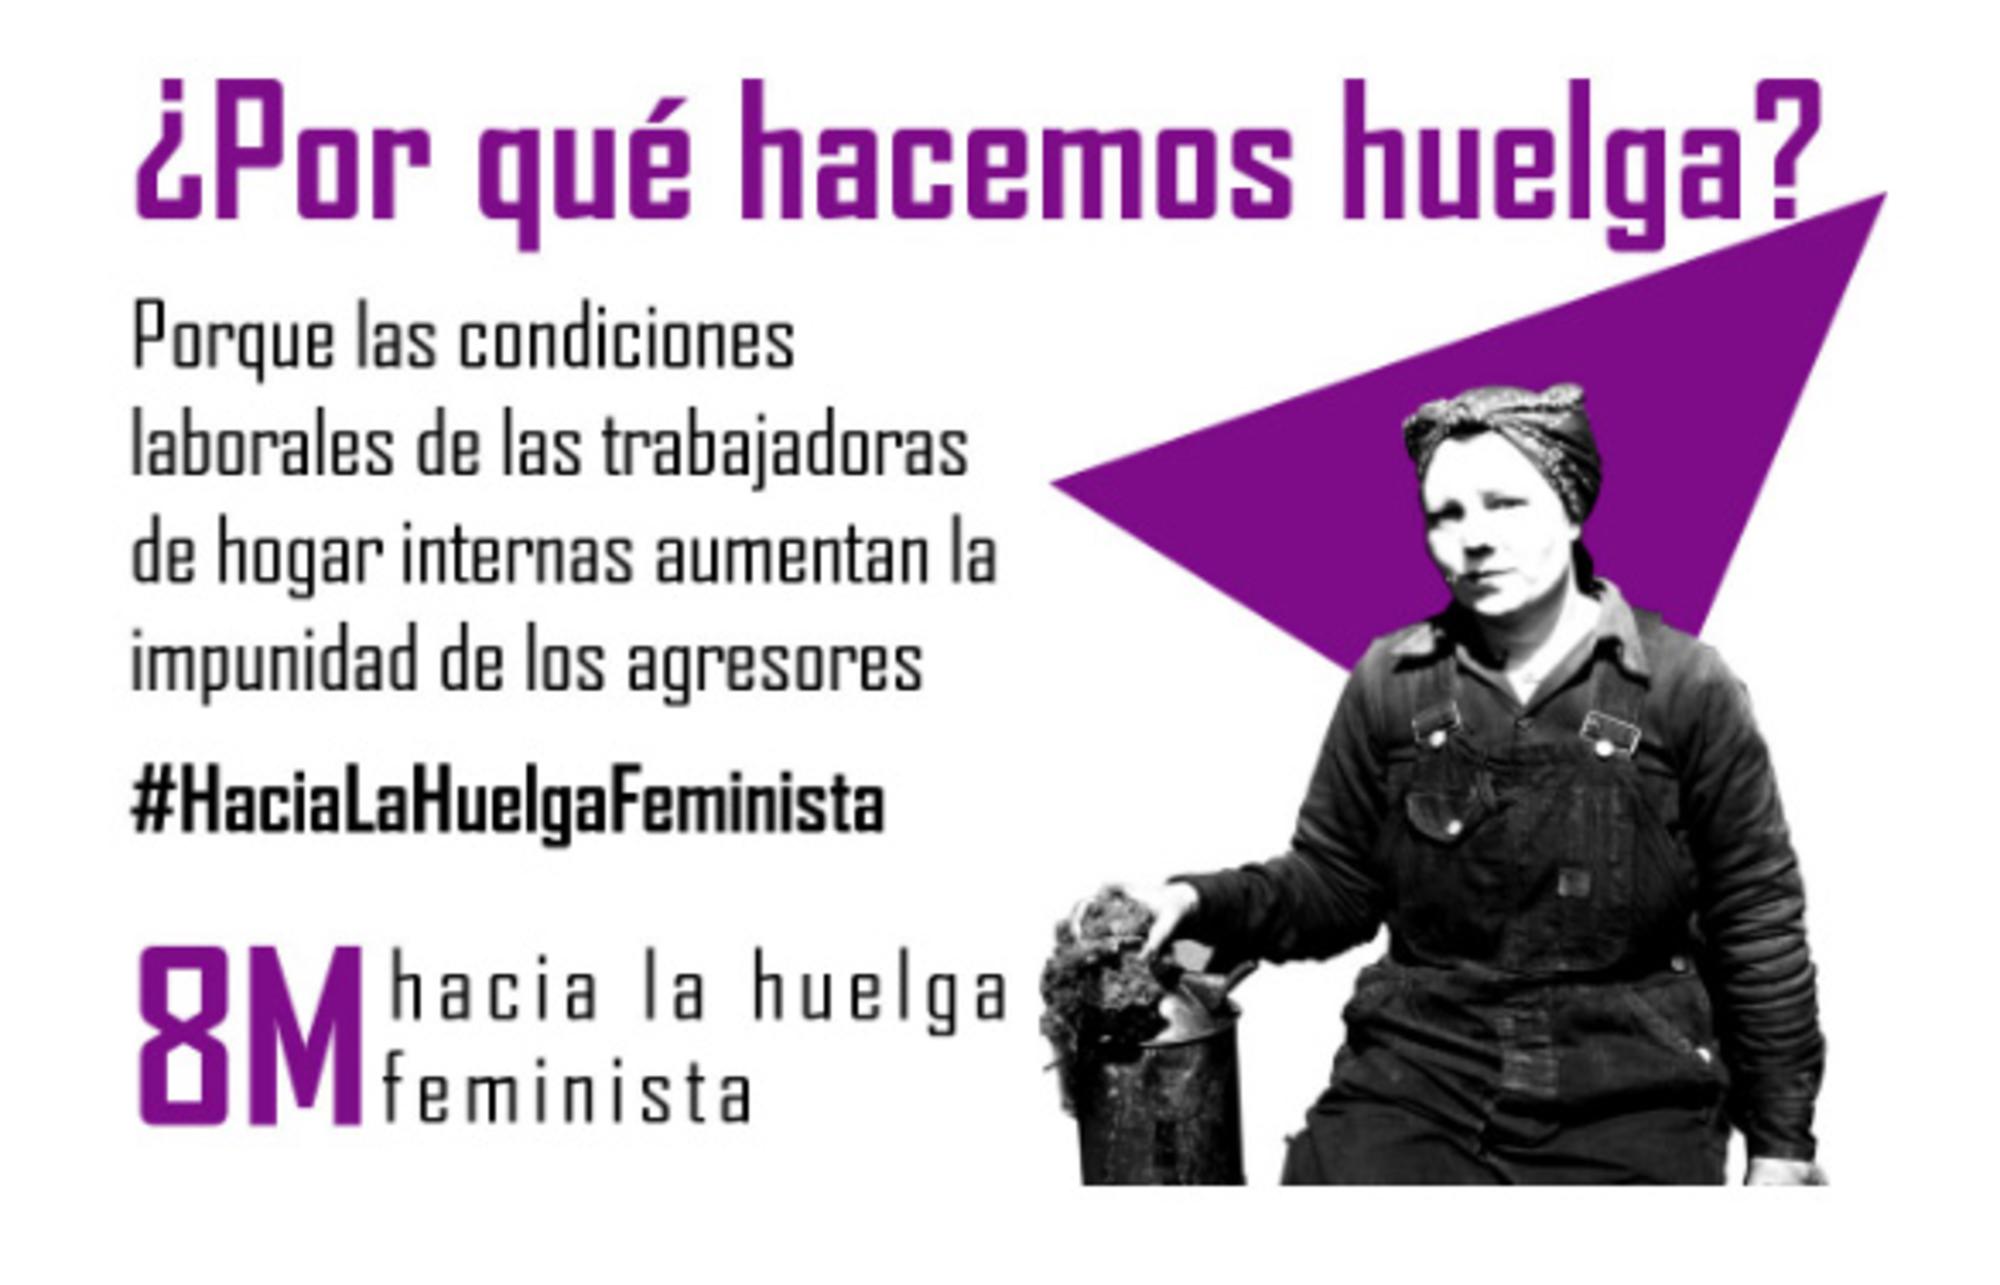 Cartel Huelga Feminista 1